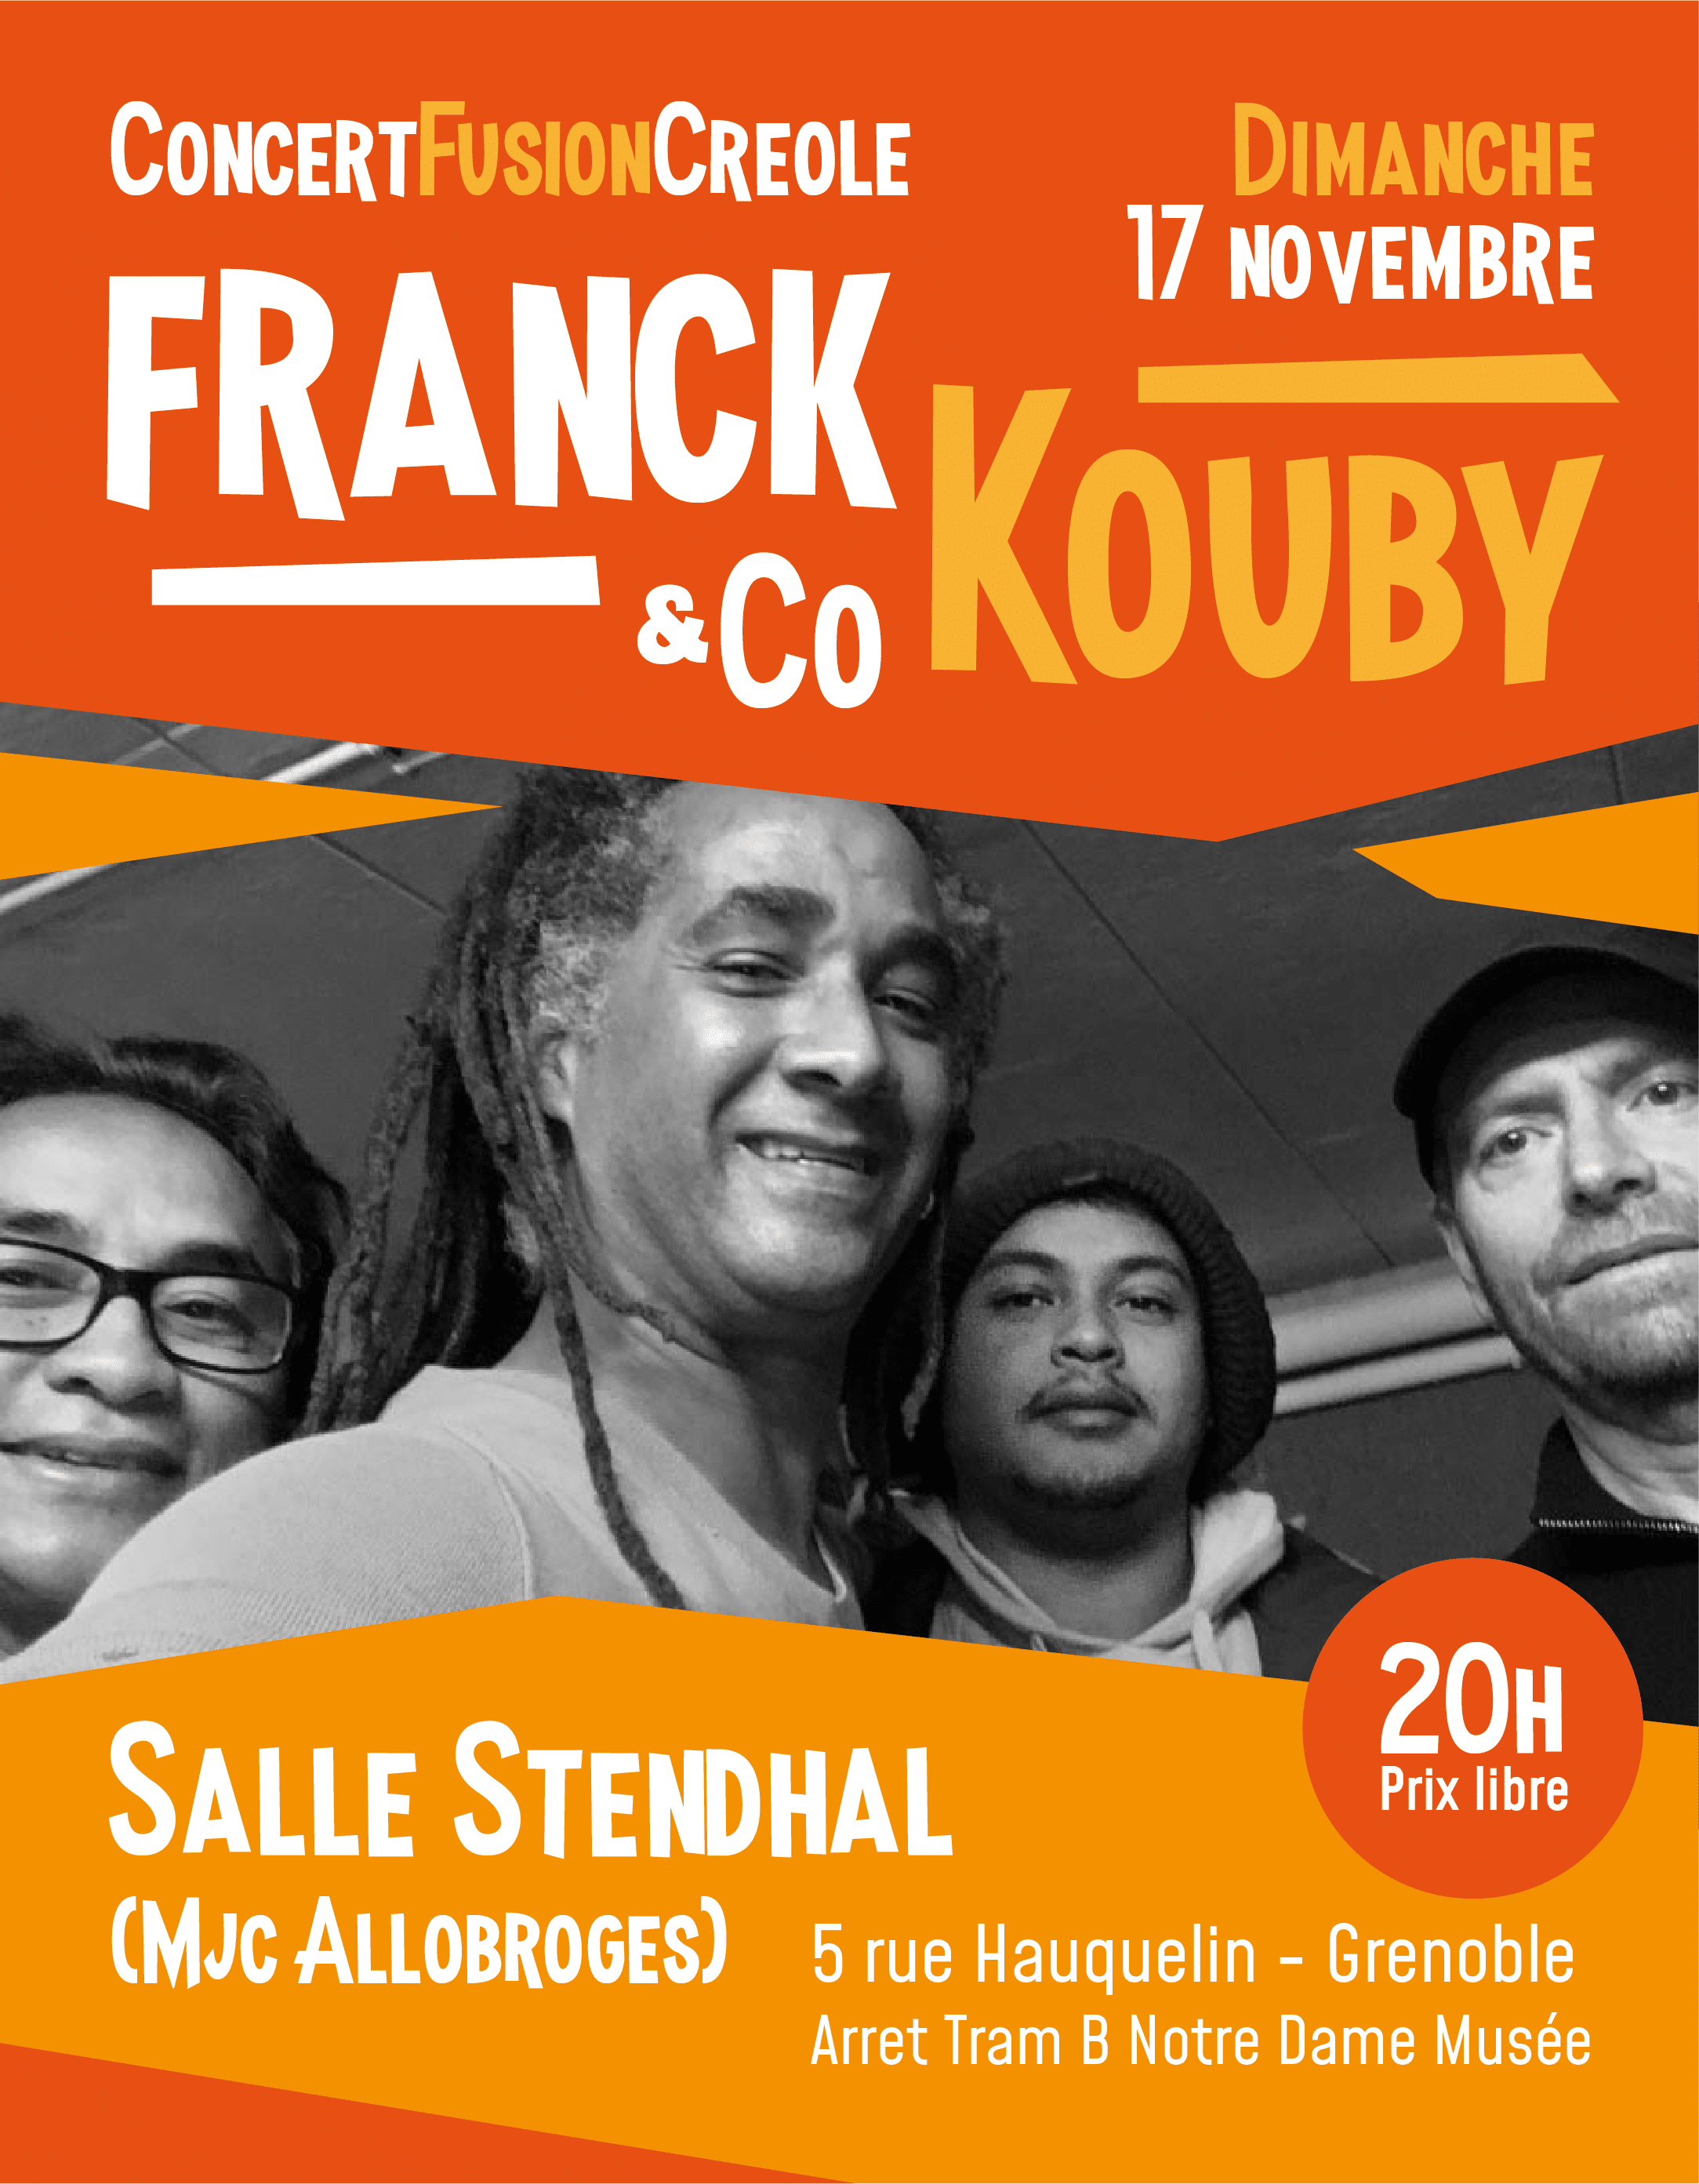 Concert Franck Kouby & Co 17 novembre 2019